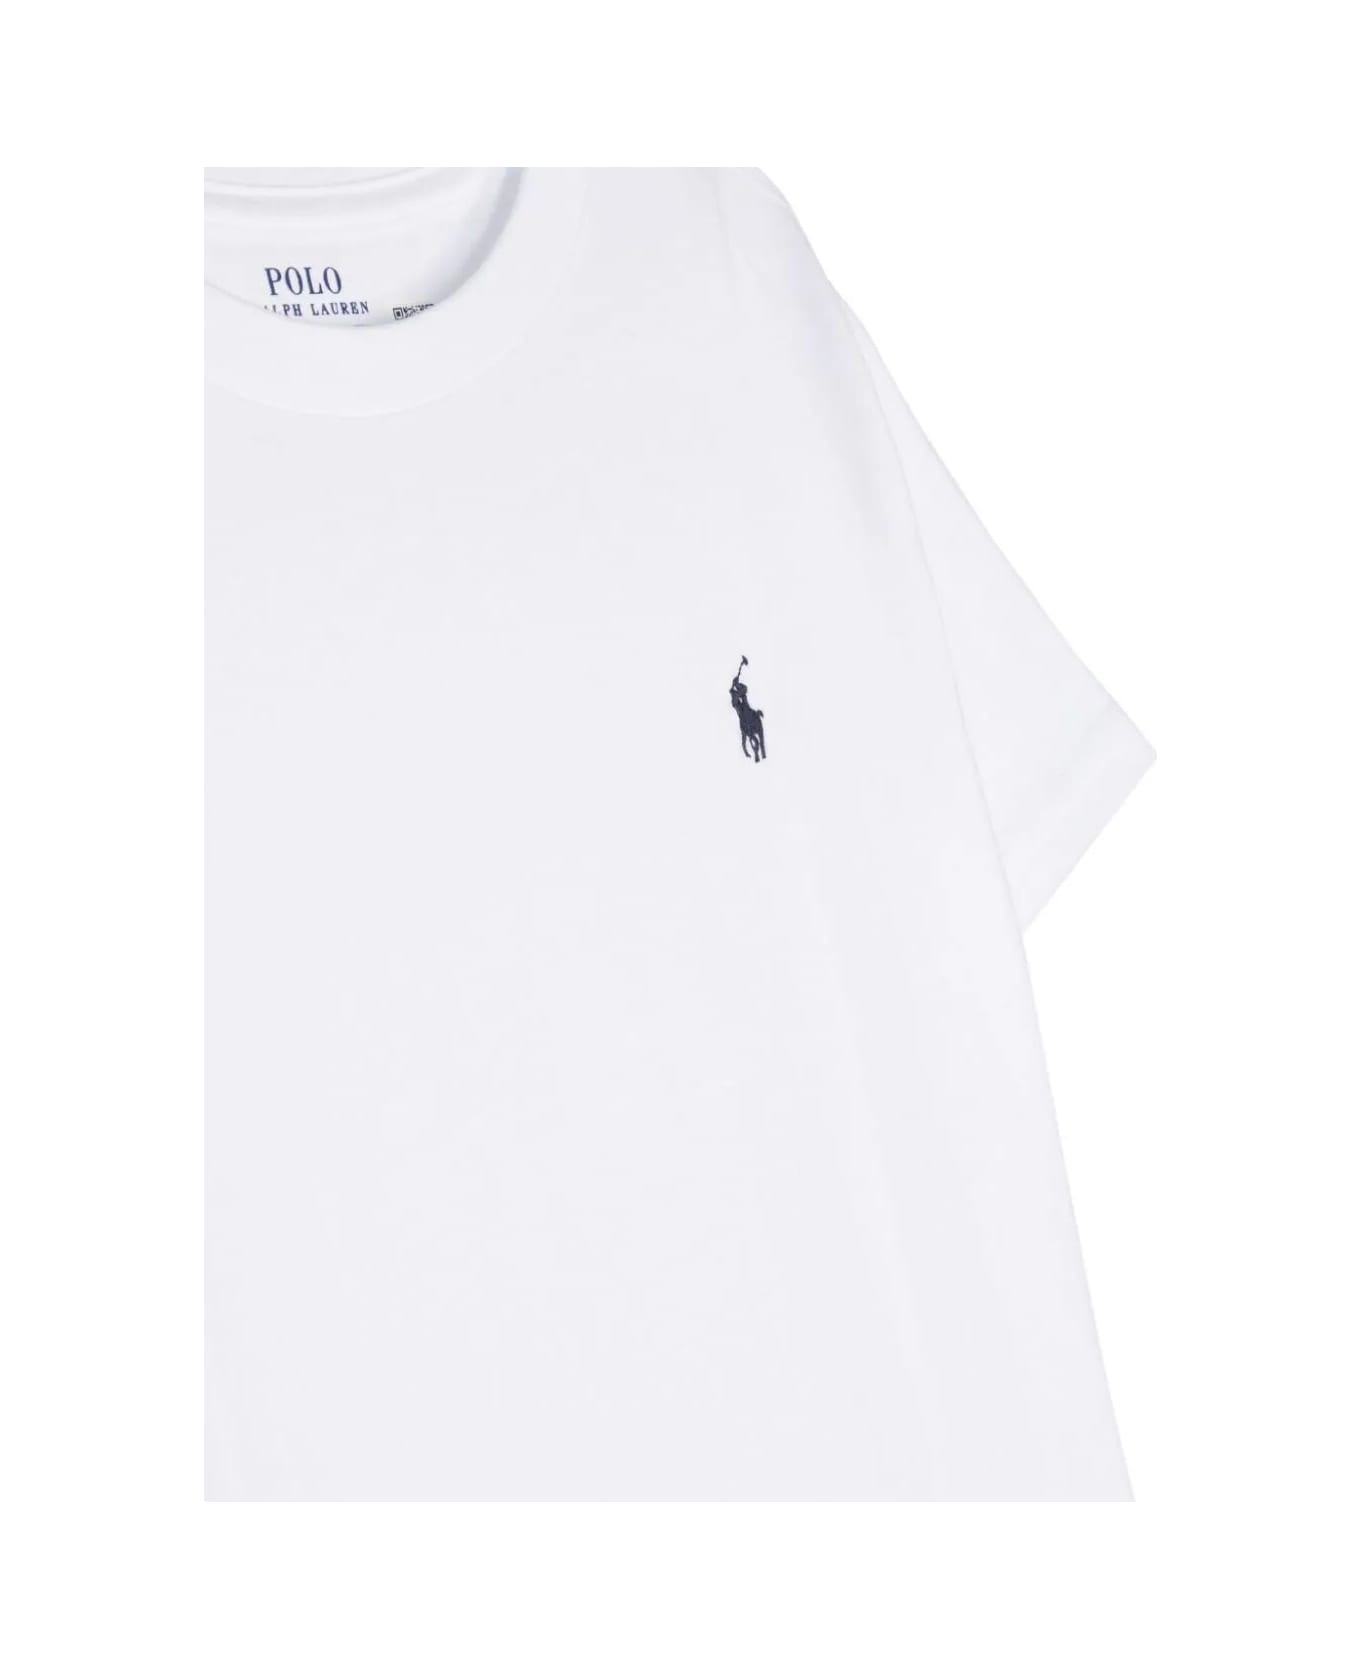 Polo Ralph Lauren Ss Cn-tops-t-shirt - White